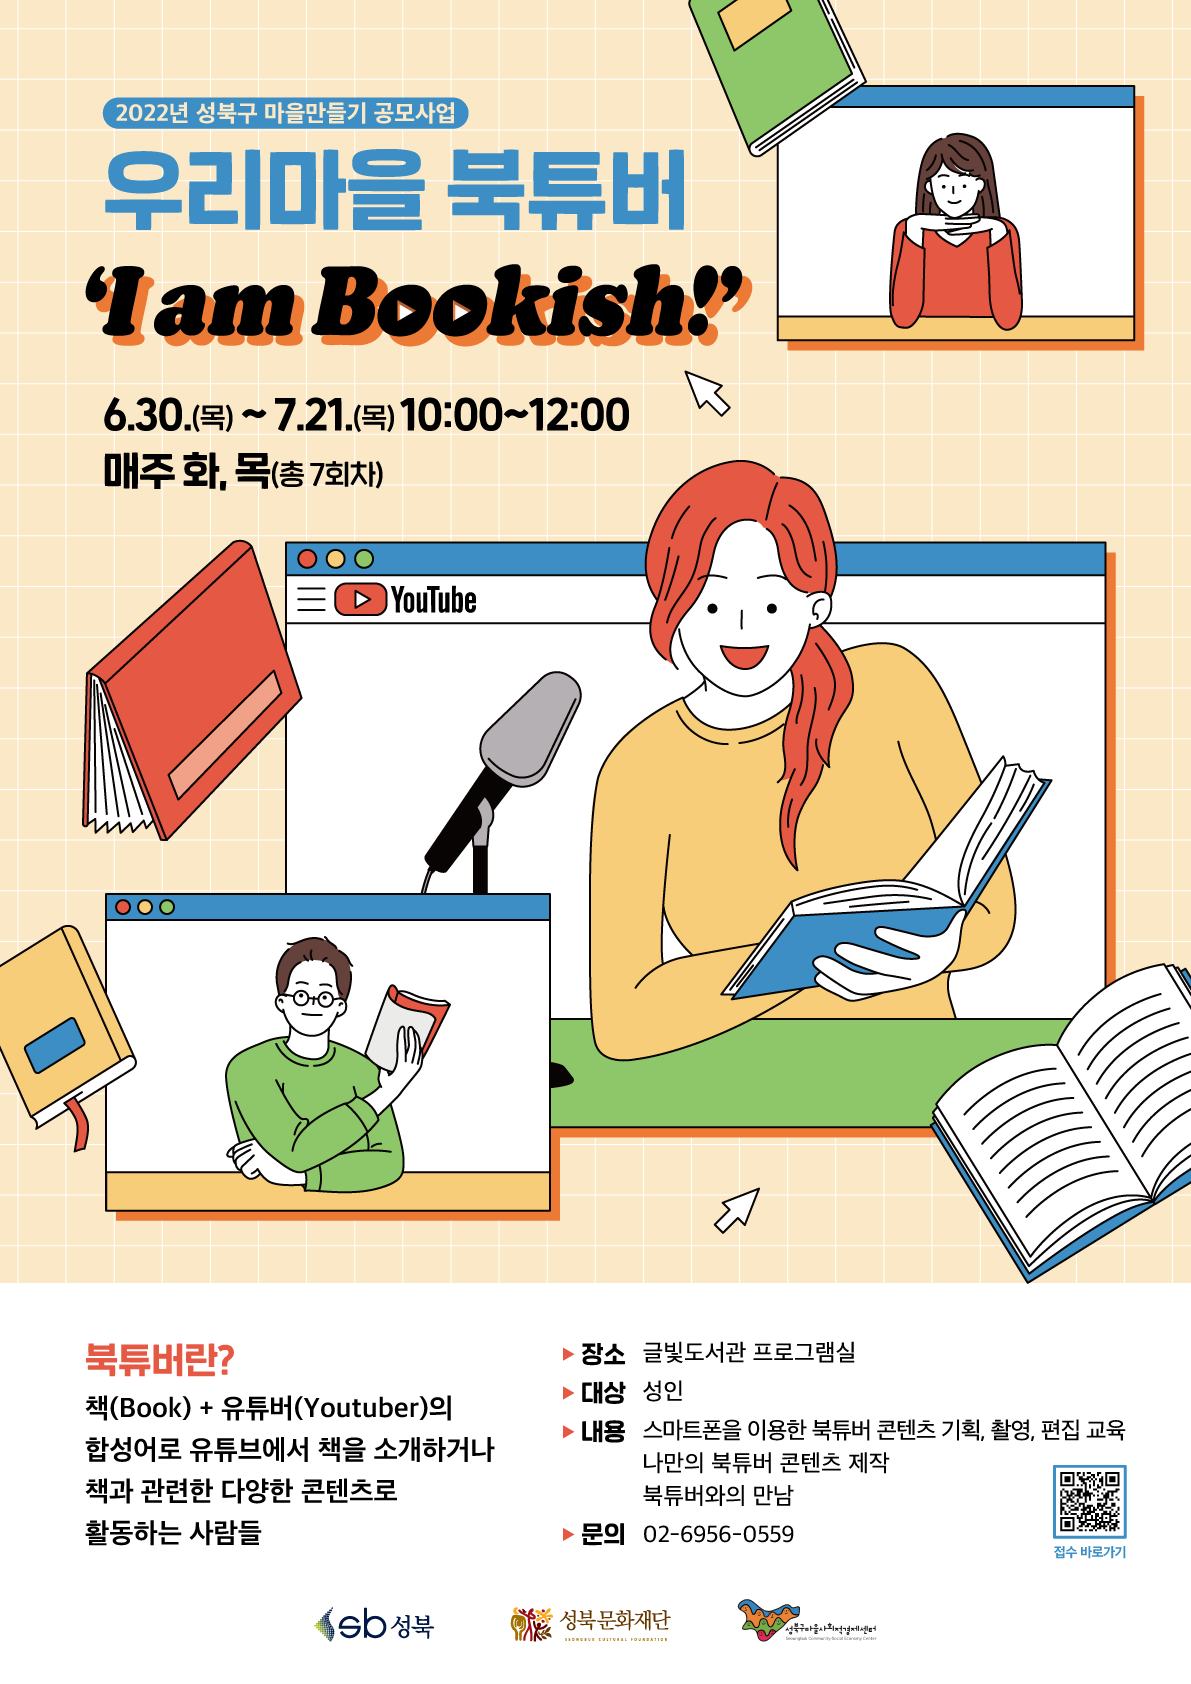 [마을만들기 공모사업 후기] 우리마을 북튜버 'I am Bookish!'